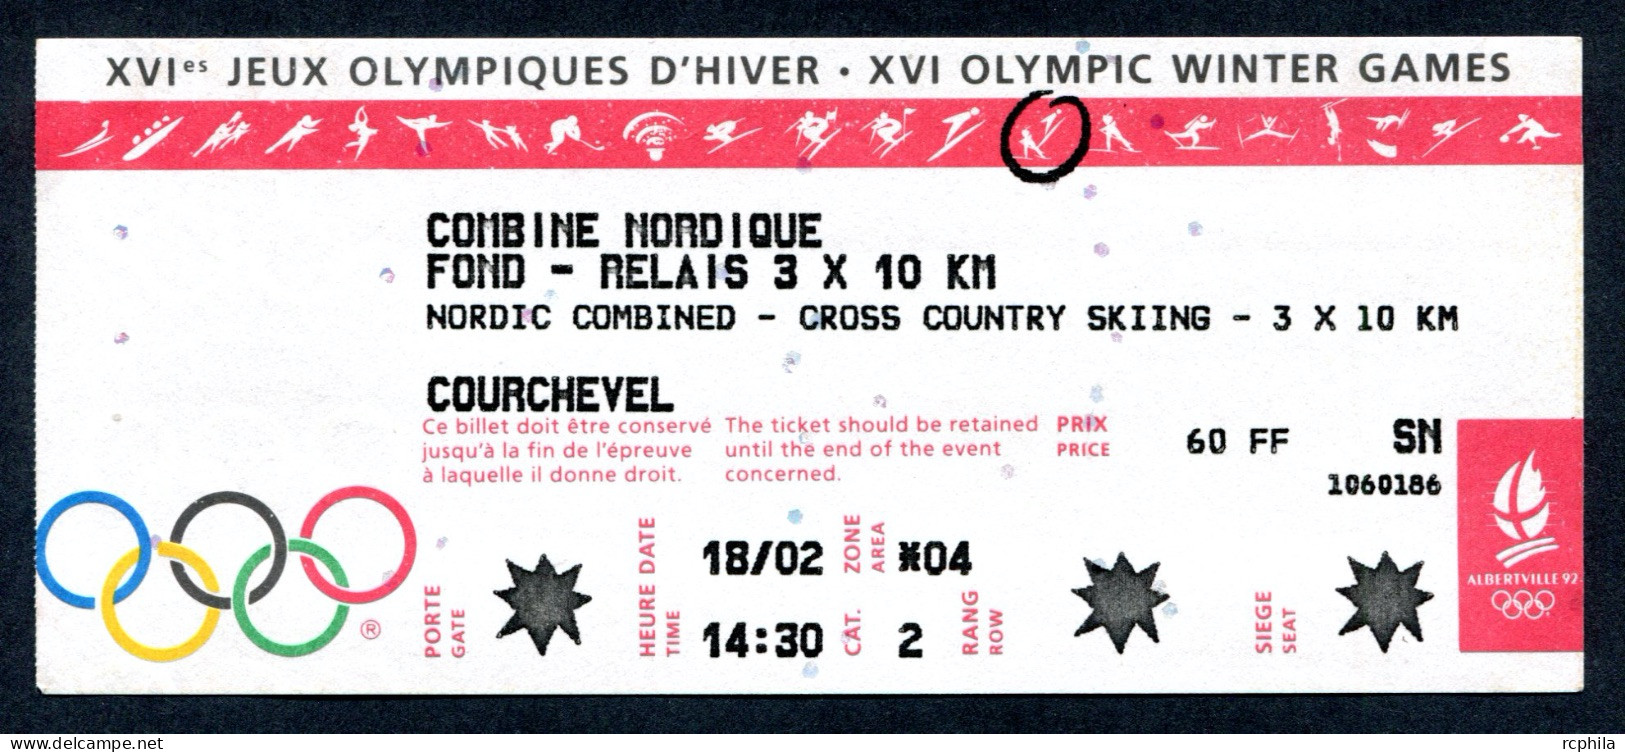 RC 25632 JEUX OLYMPIQUE D ALBERTVILLE 1992 COURCHEVEL BILLET COMBINÉ NORDIQUE SKI DE FOND RELAIS 3 X 10km - Eintrittskarten